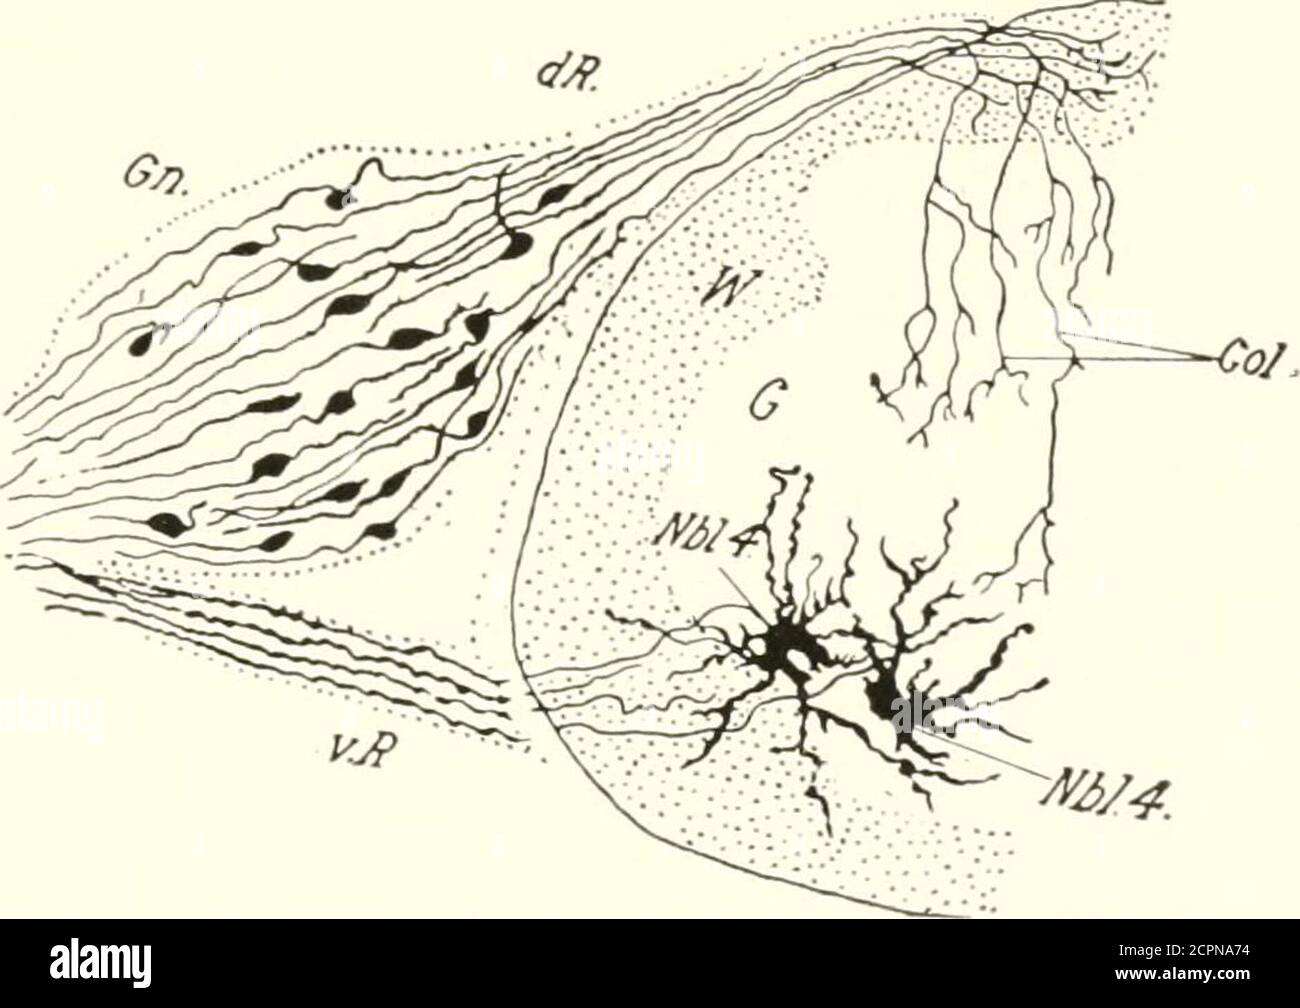 . Die Entwicklung des Kükens; eine Einführung in die Embryologie . HIM). Nhl. 4, Neurobhist des Tie ventral Horn (Motor). DAS NERVENSYSTEM 237 die dorsale Wurzel und des sympathischen Systems. Die erste Art wird hier betrachtet, und sie werden normalerweise die gan-glionischen Neuroblasten s.s., ] genannt:)weil sie allein in der Spinalganglia bleiben. Wie die medullären Neuroblasten bilden diese Neuroblasten Auswuchsterungen, die zu Achsenzylinderprozessen werden; aber sie unterschieden sich von letzterem dadurch, dass jeder ganglionische Neuroblast zwei Axone bildet, eines von jedem Ende der spindelförmigen Zellen, die mit ihren umragten Stockfoto